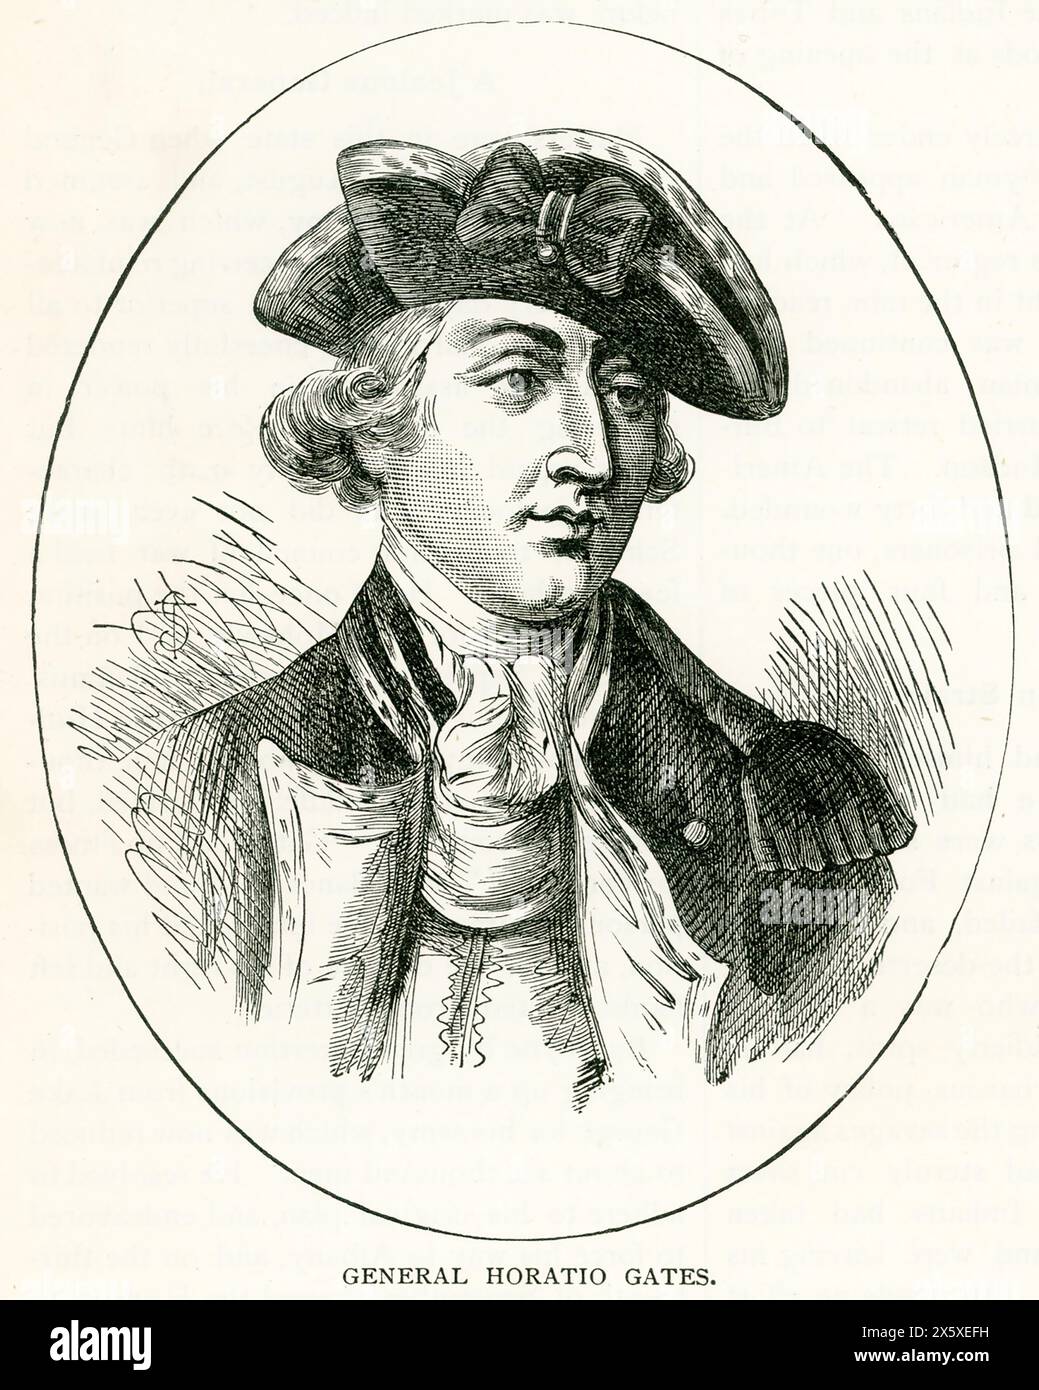 L'illustrazione mostra il generale Horatio Gates (1728-1806), un generale americano di origine inglese nella rivoluzione americana (1775-83). La sua vittoria sugli inglesi nella battaglia di Saratoga (1777) fece cambiare l'ondata di vittoria per conto dei rivoluzionari. Foto Stock